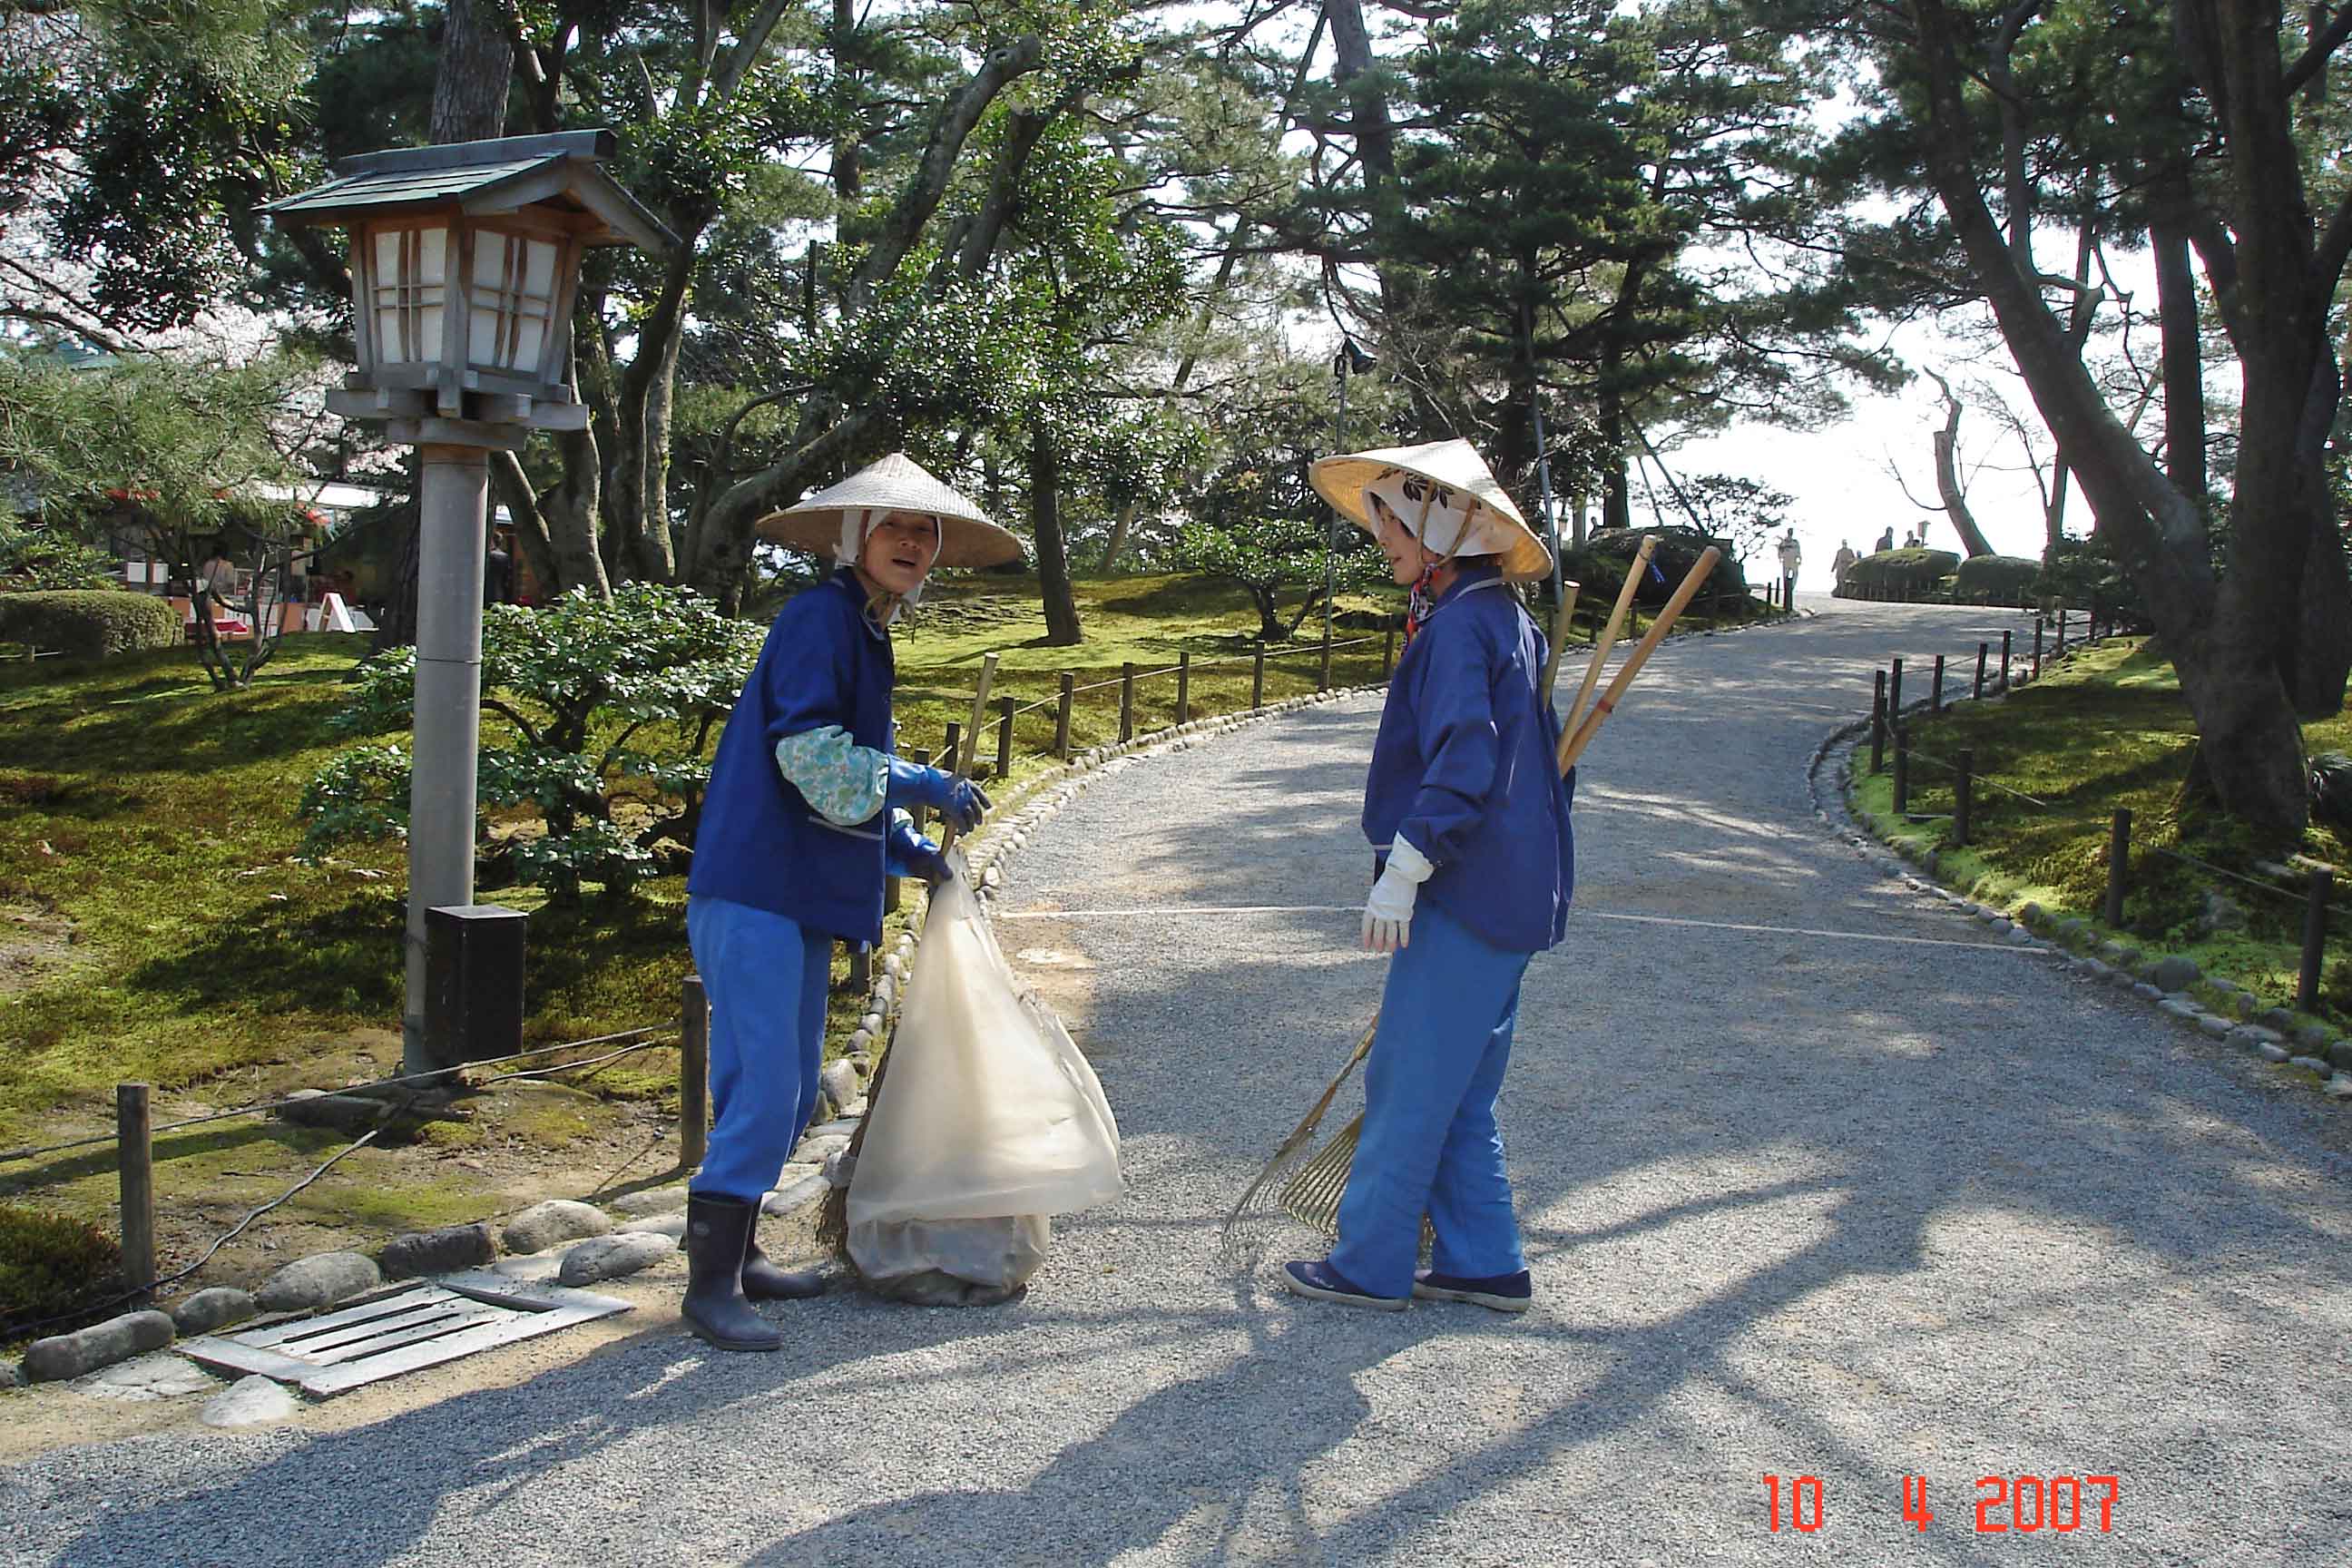 Japanese women tending paths in the park-Kenrokuen